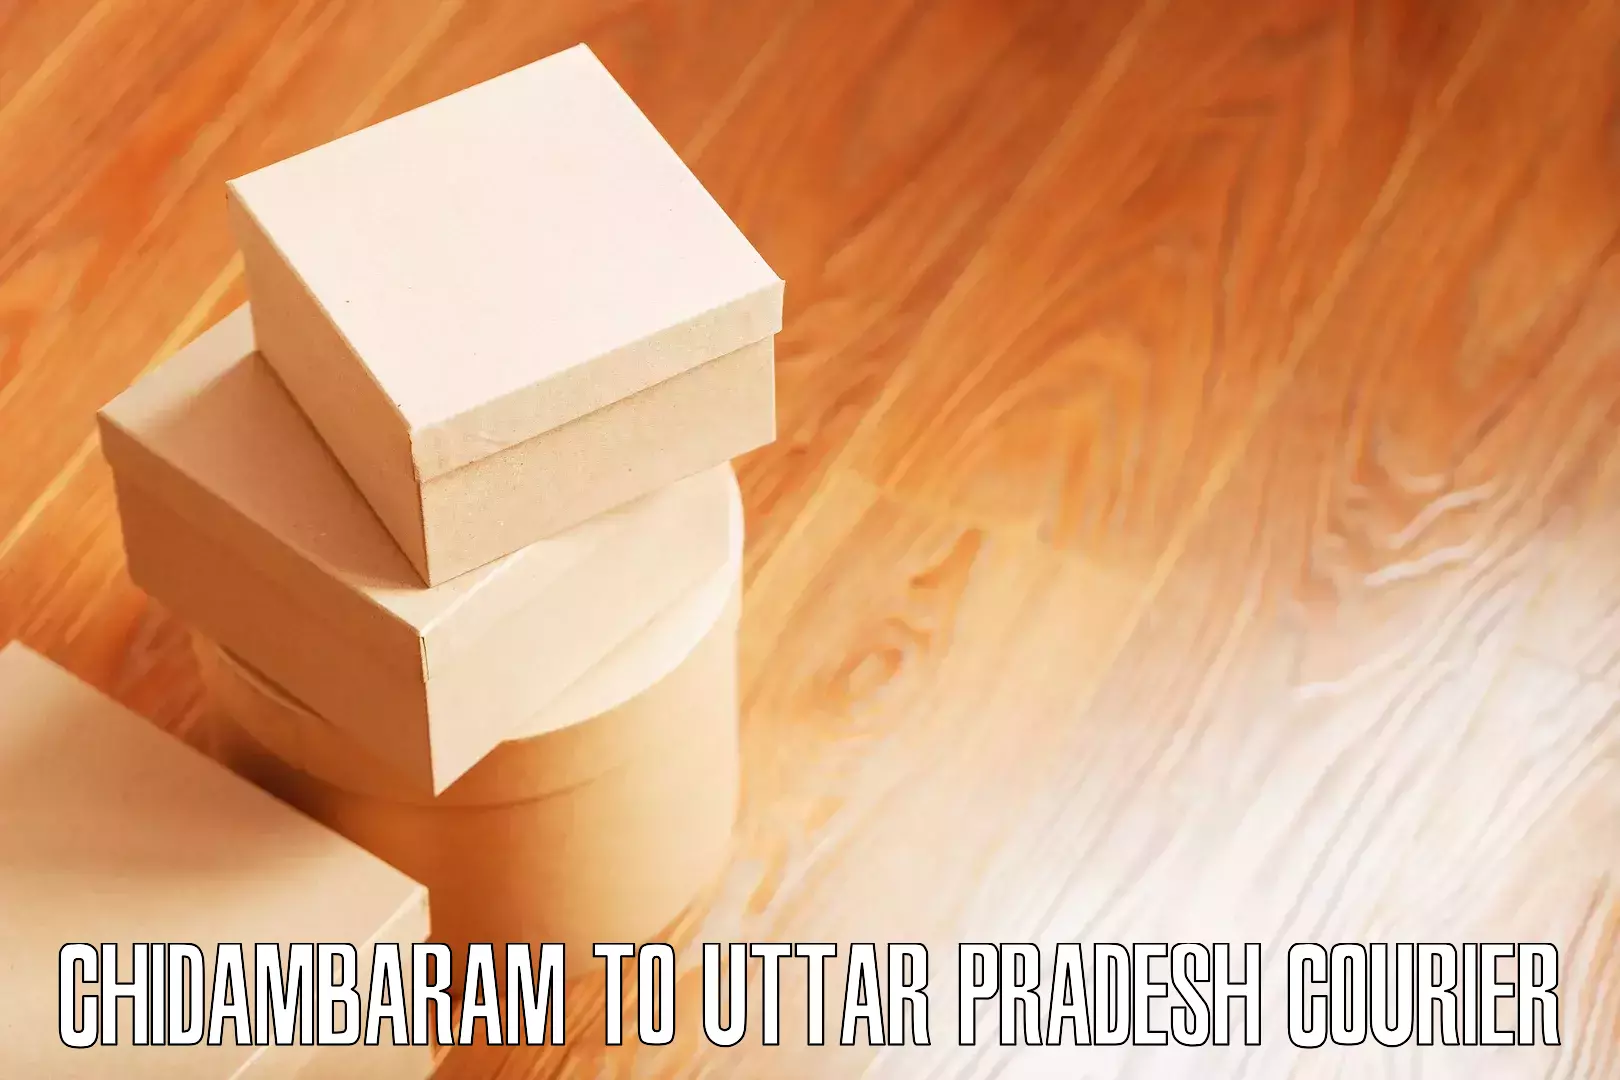 Efficient furniture movers Chidambaram to Siyana